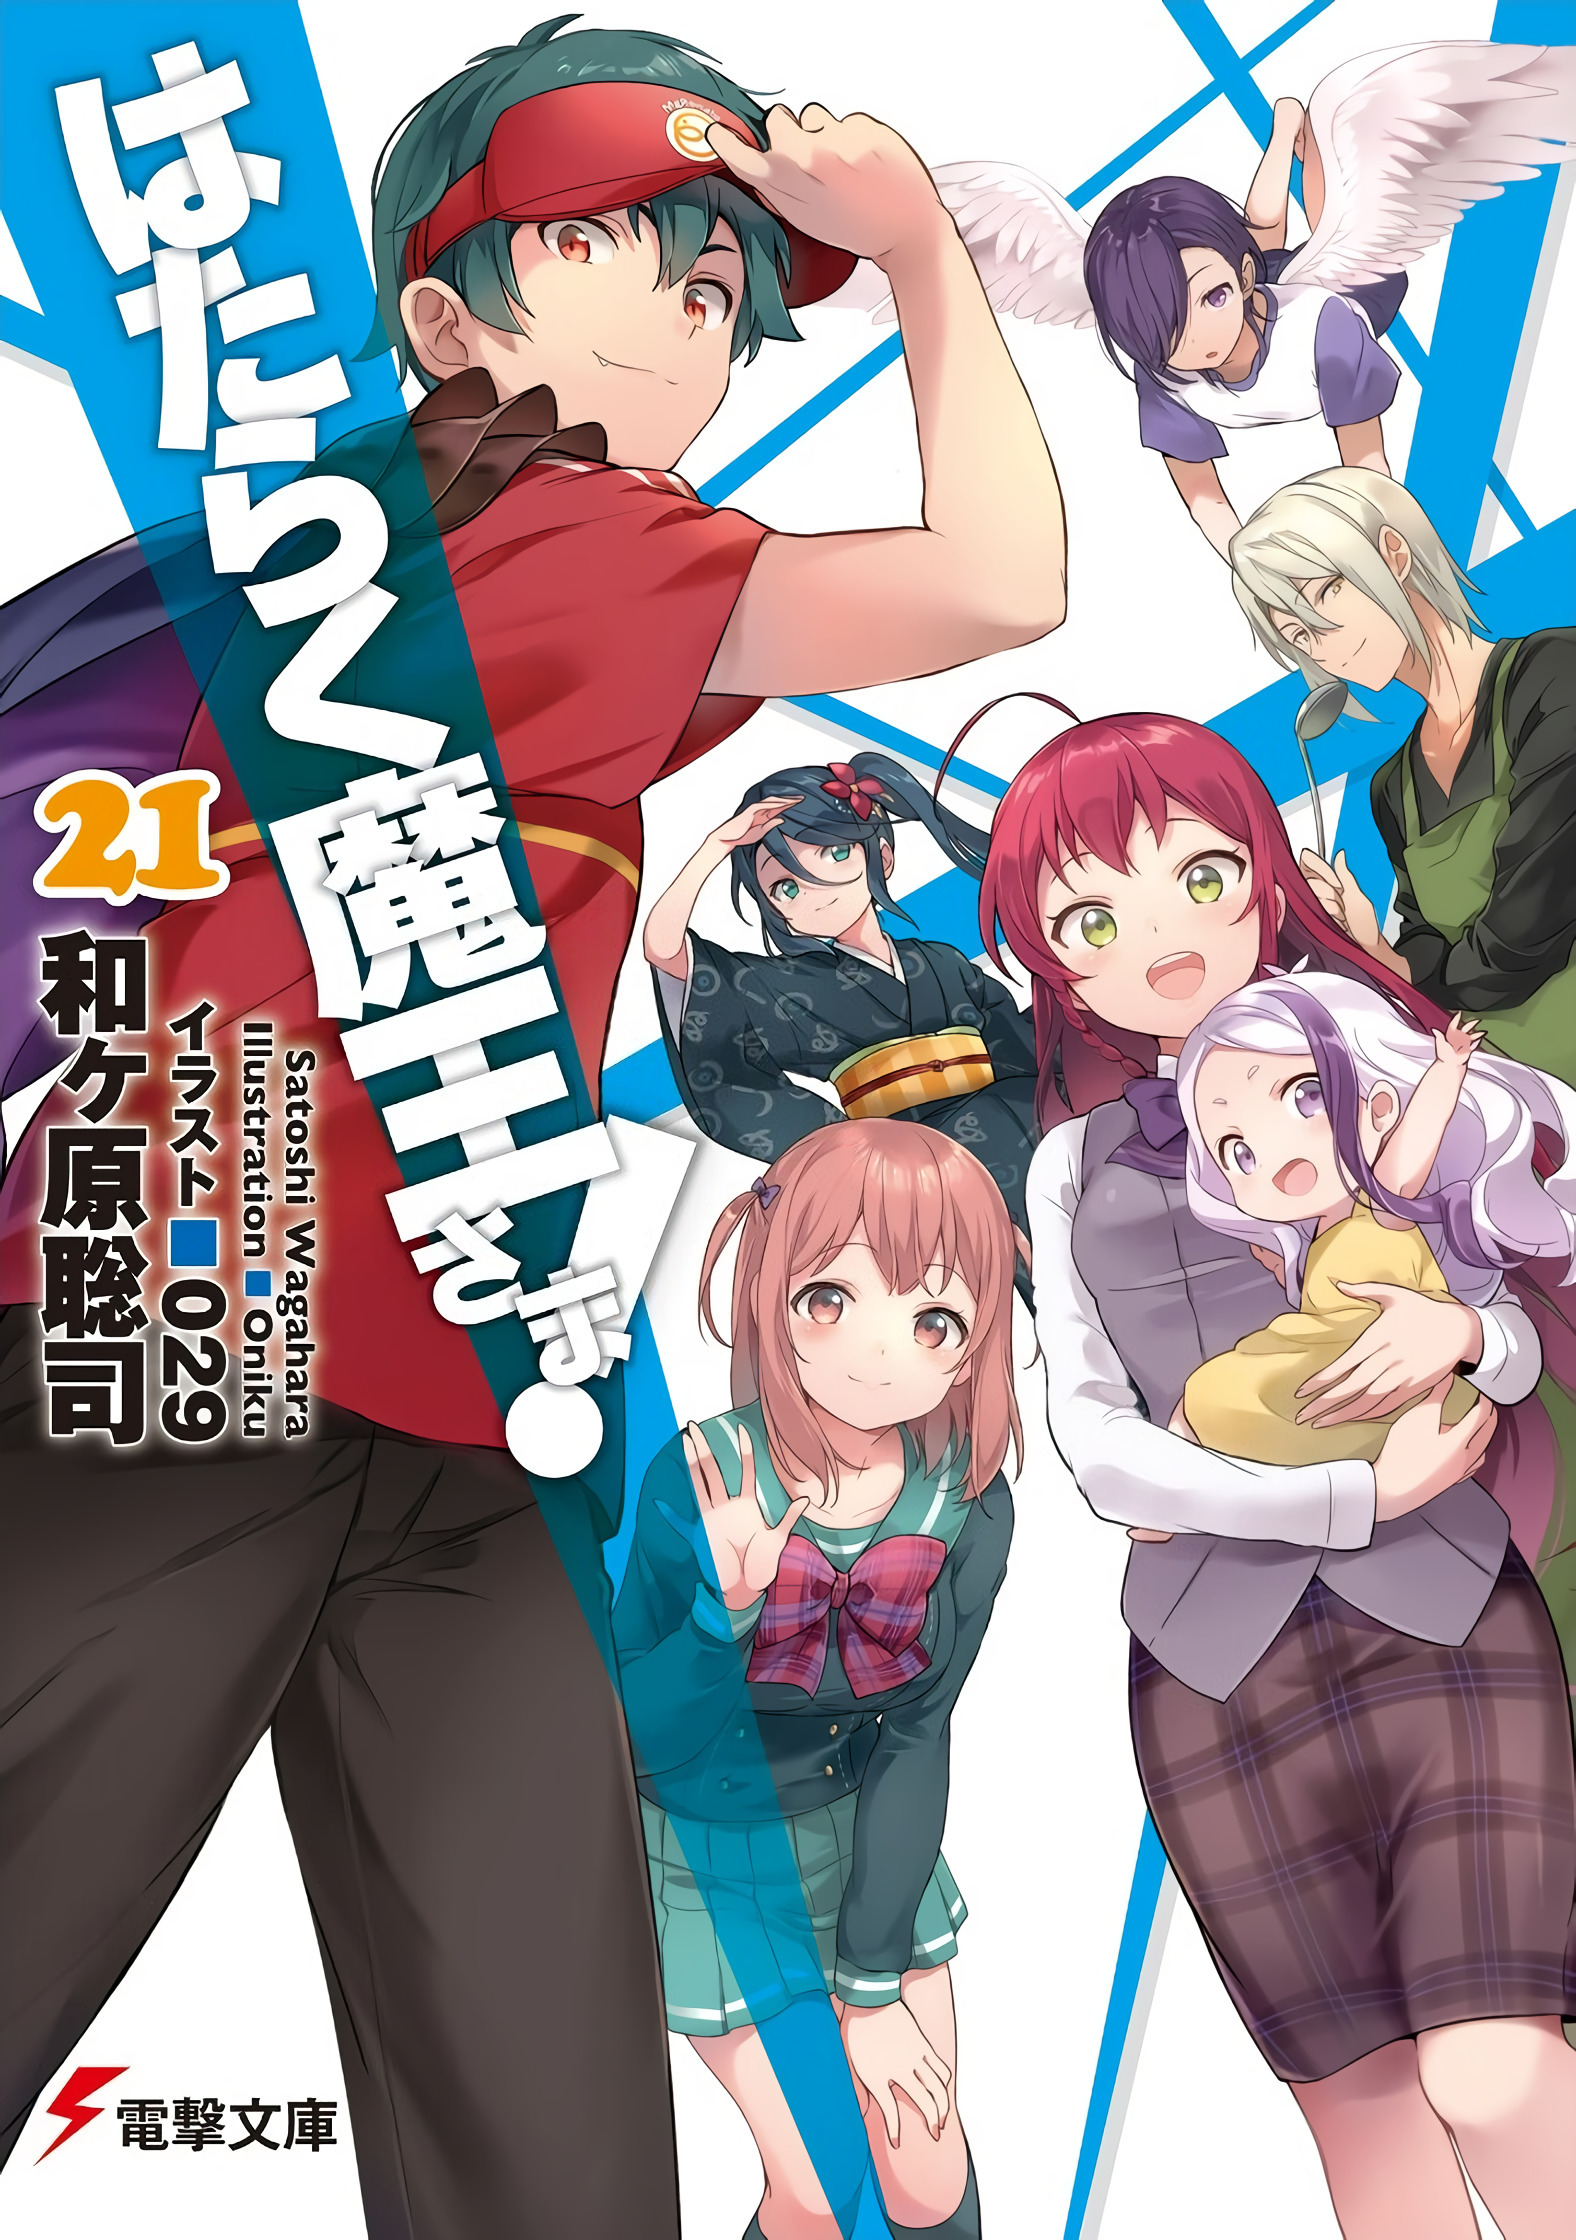 Light Novel Volume 21 | Hataraku Maou-sama! Wiki | Fandom